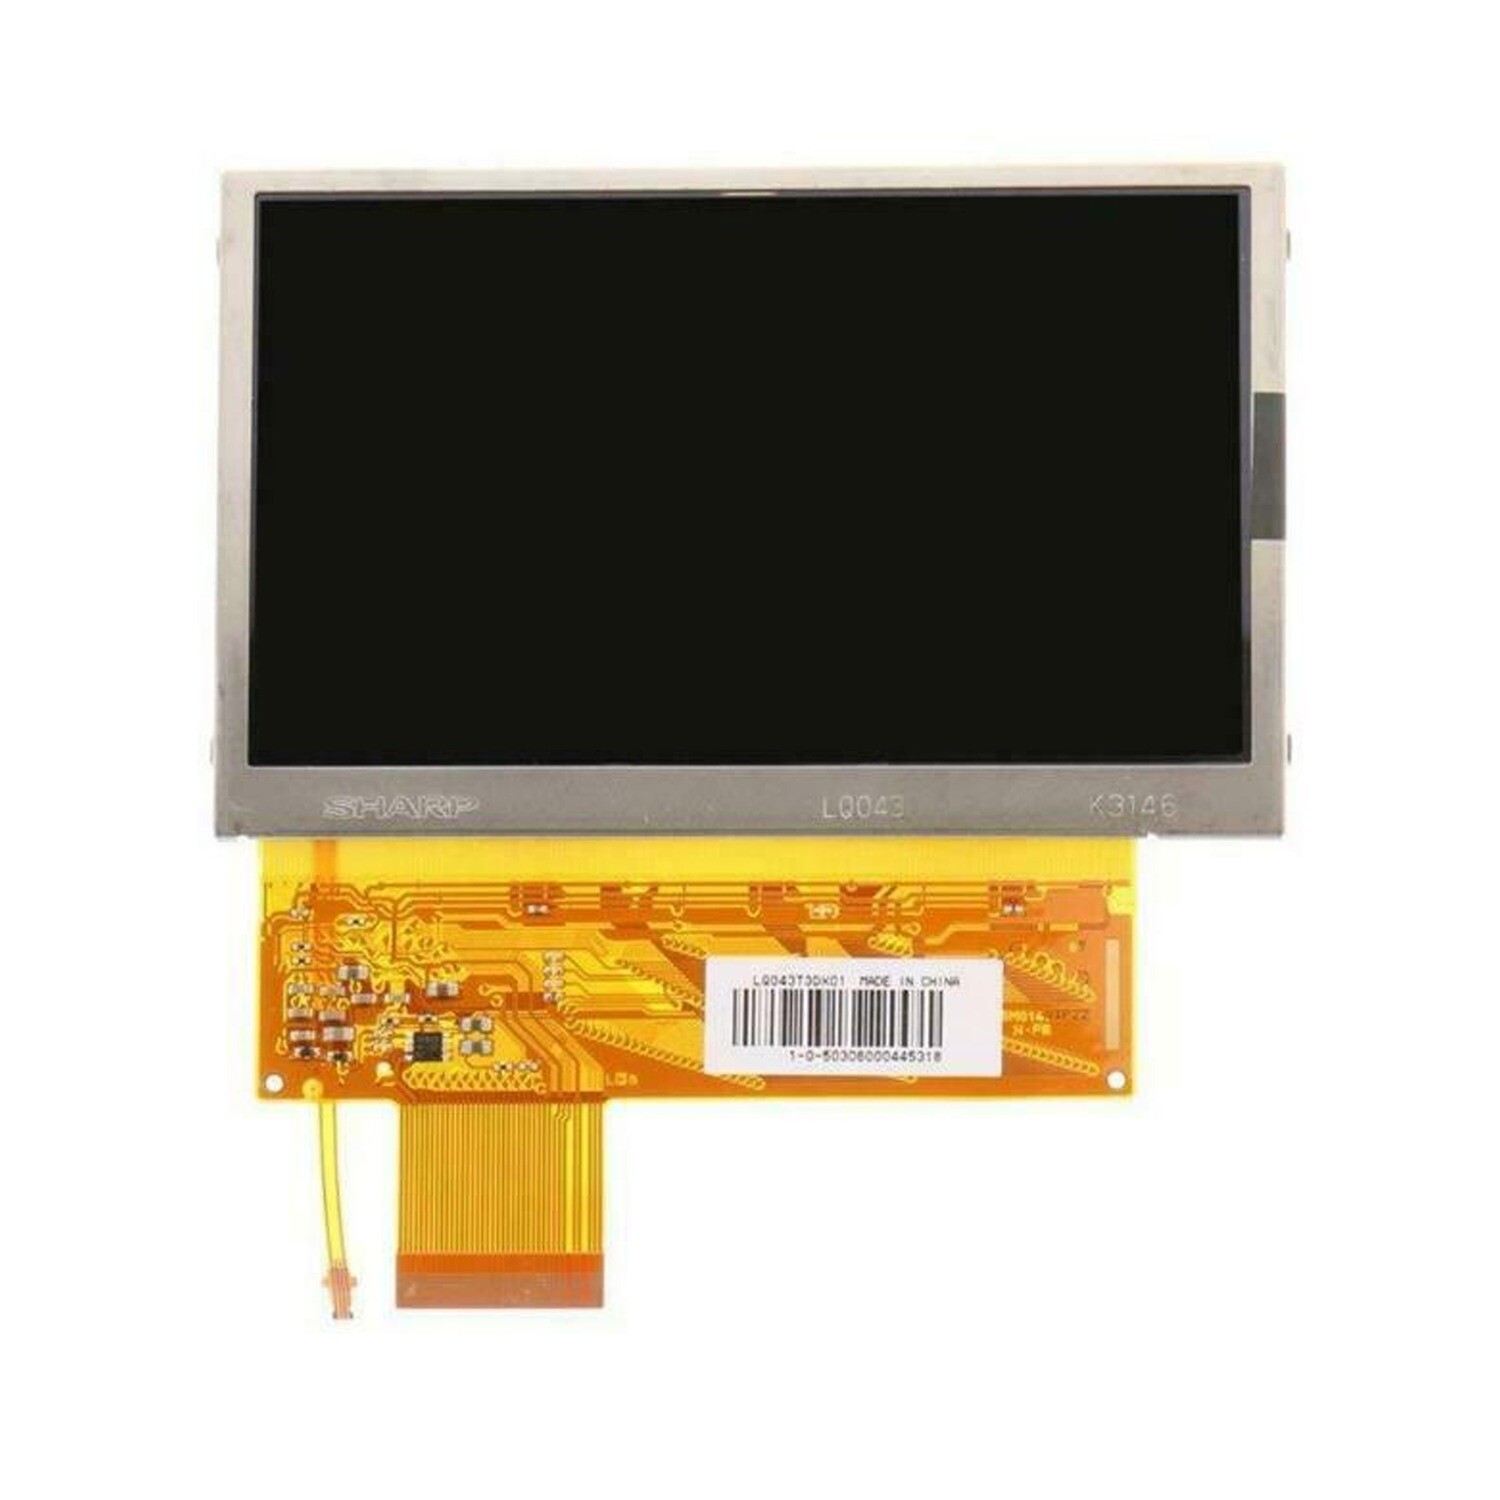 PSP-1000 LCD